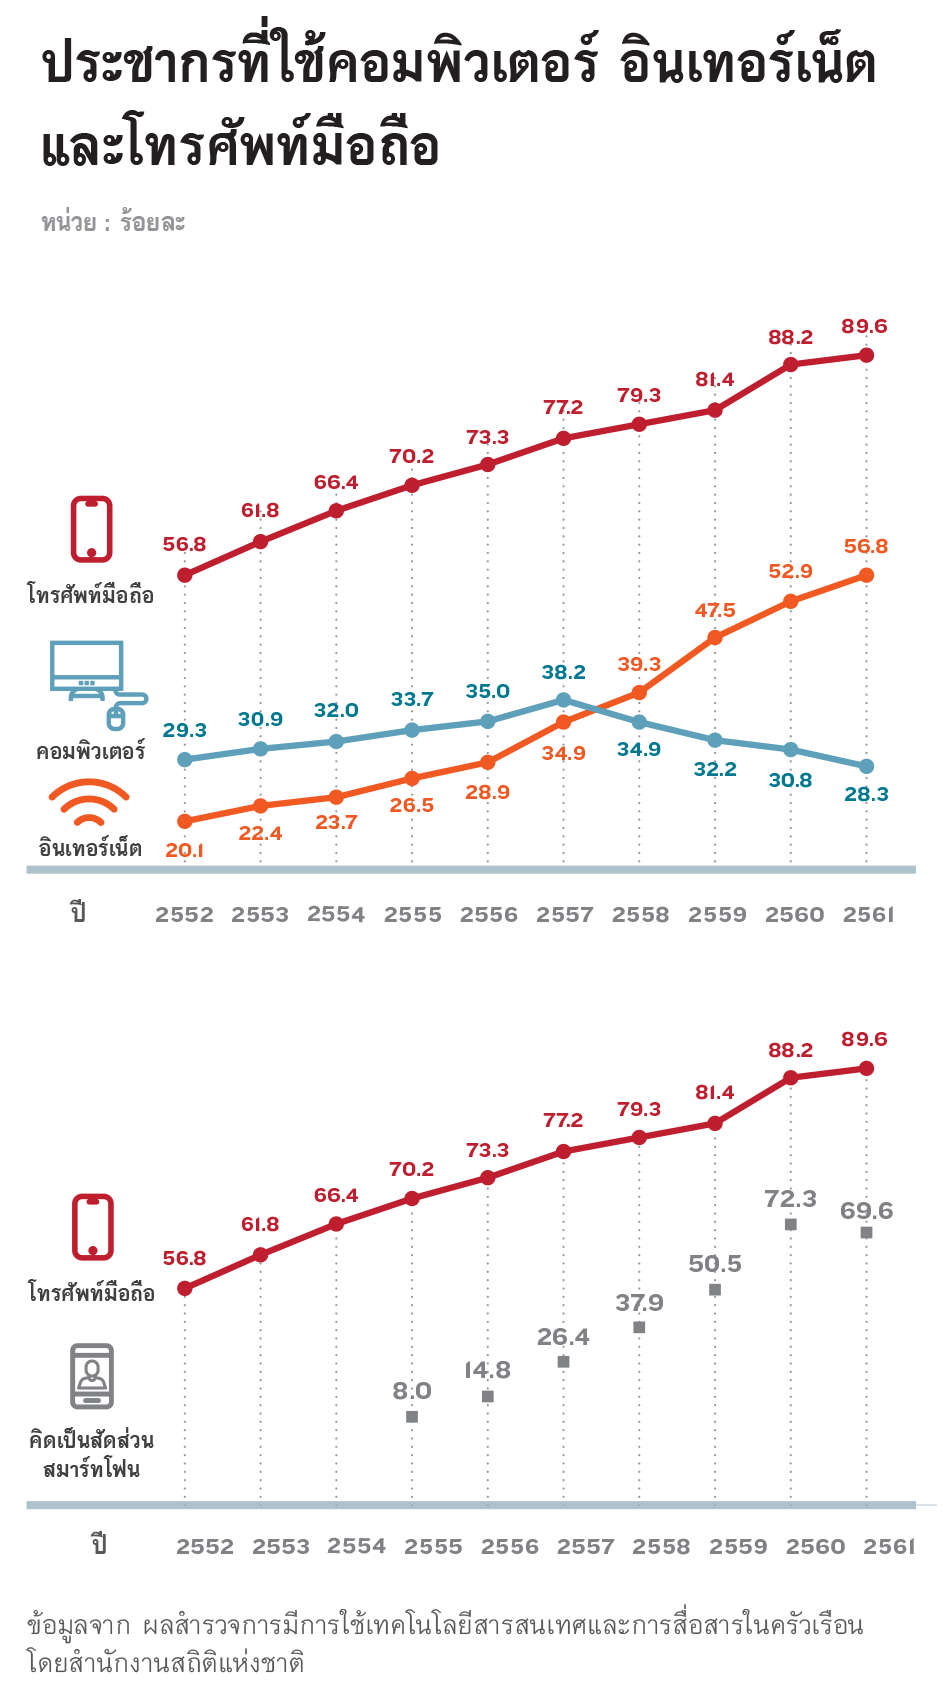 ประชากรที่ใช้คอมพิวเตอร์ อินเทอร์เน็ตและโทรศัพท์มือถือ